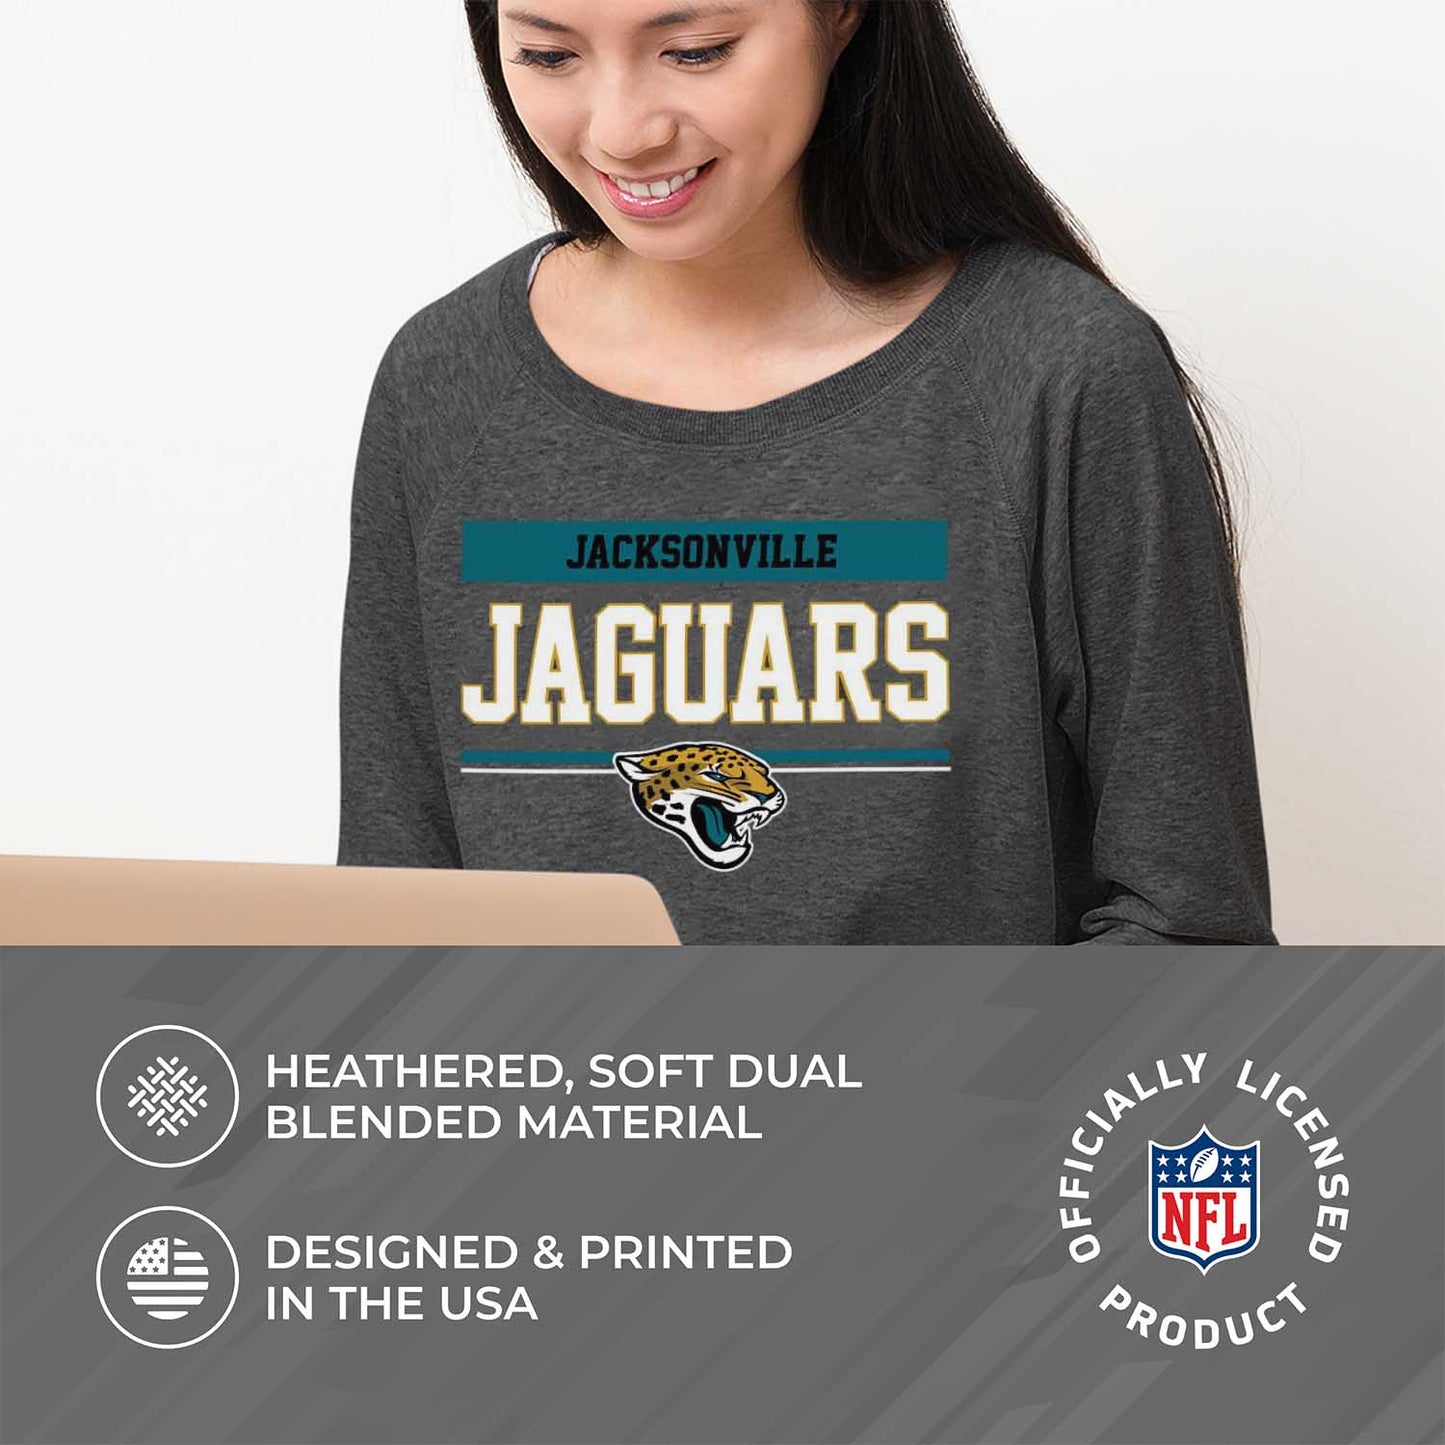 Jacksonville Jaguars NFL Women's Plus Size Team Block Charcoal Crewneck - Charcoal